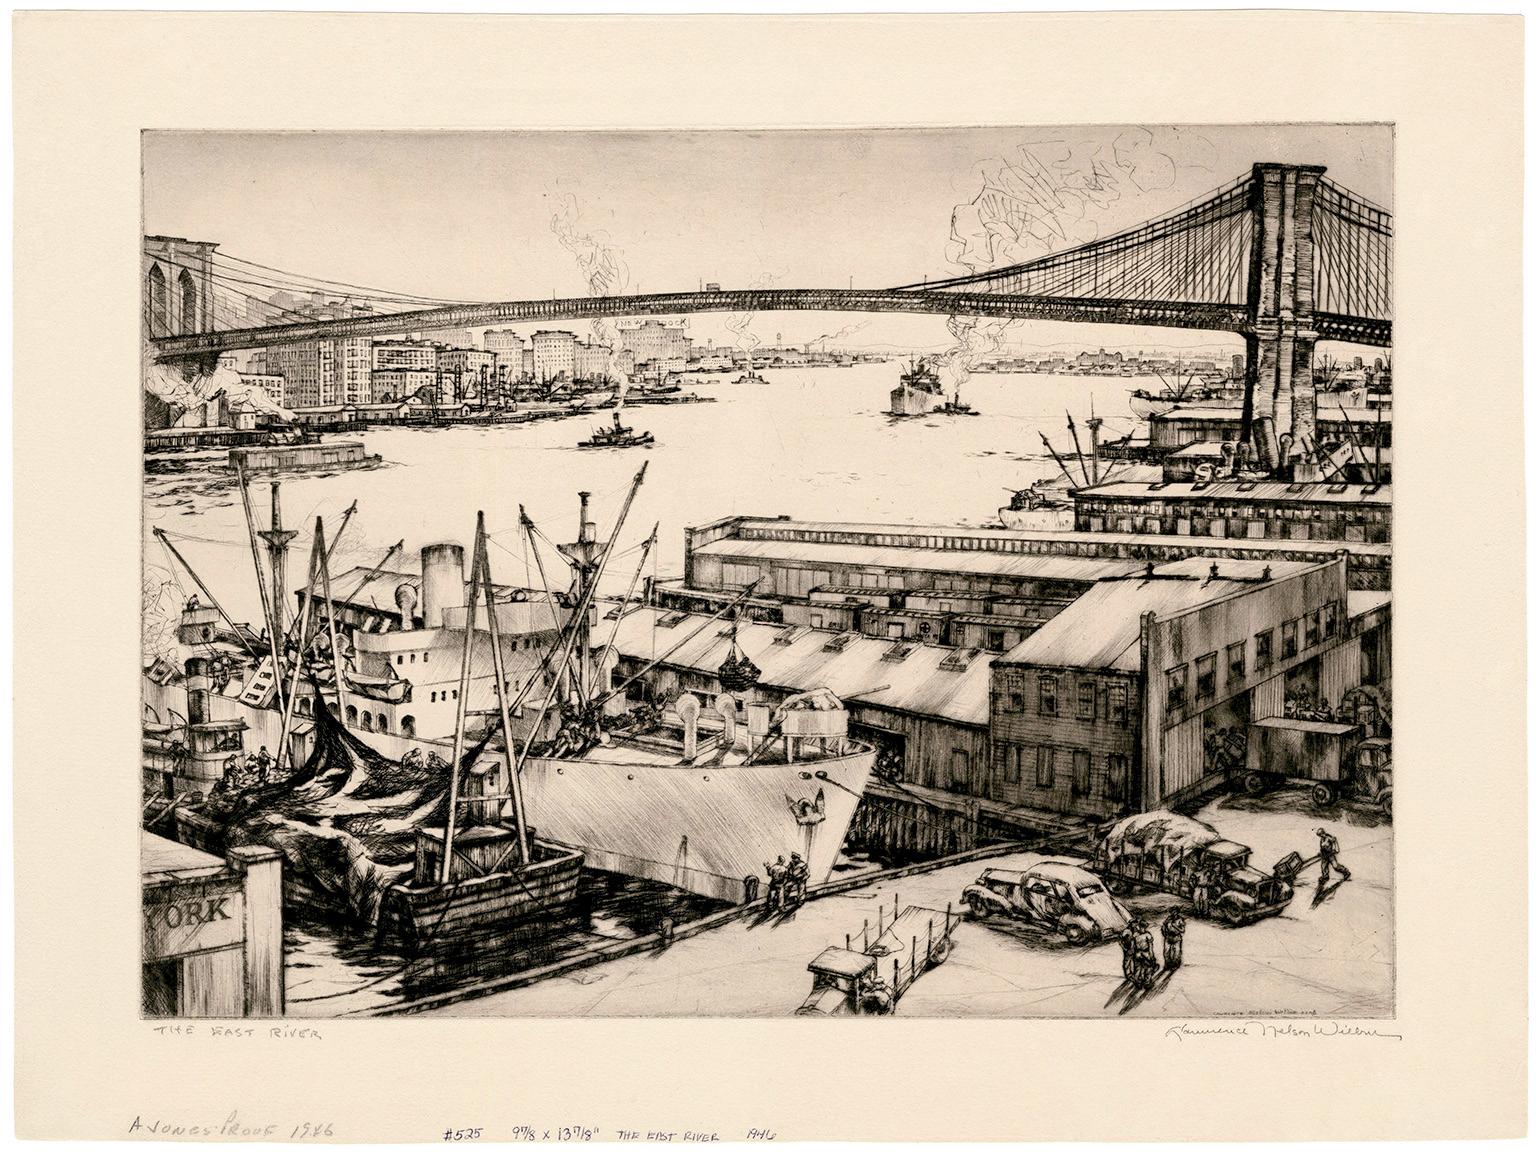 The East River, Brooklyn Bridge - Réalisme du milieu du siècle, New York City - Print de Lawrence Wilbur